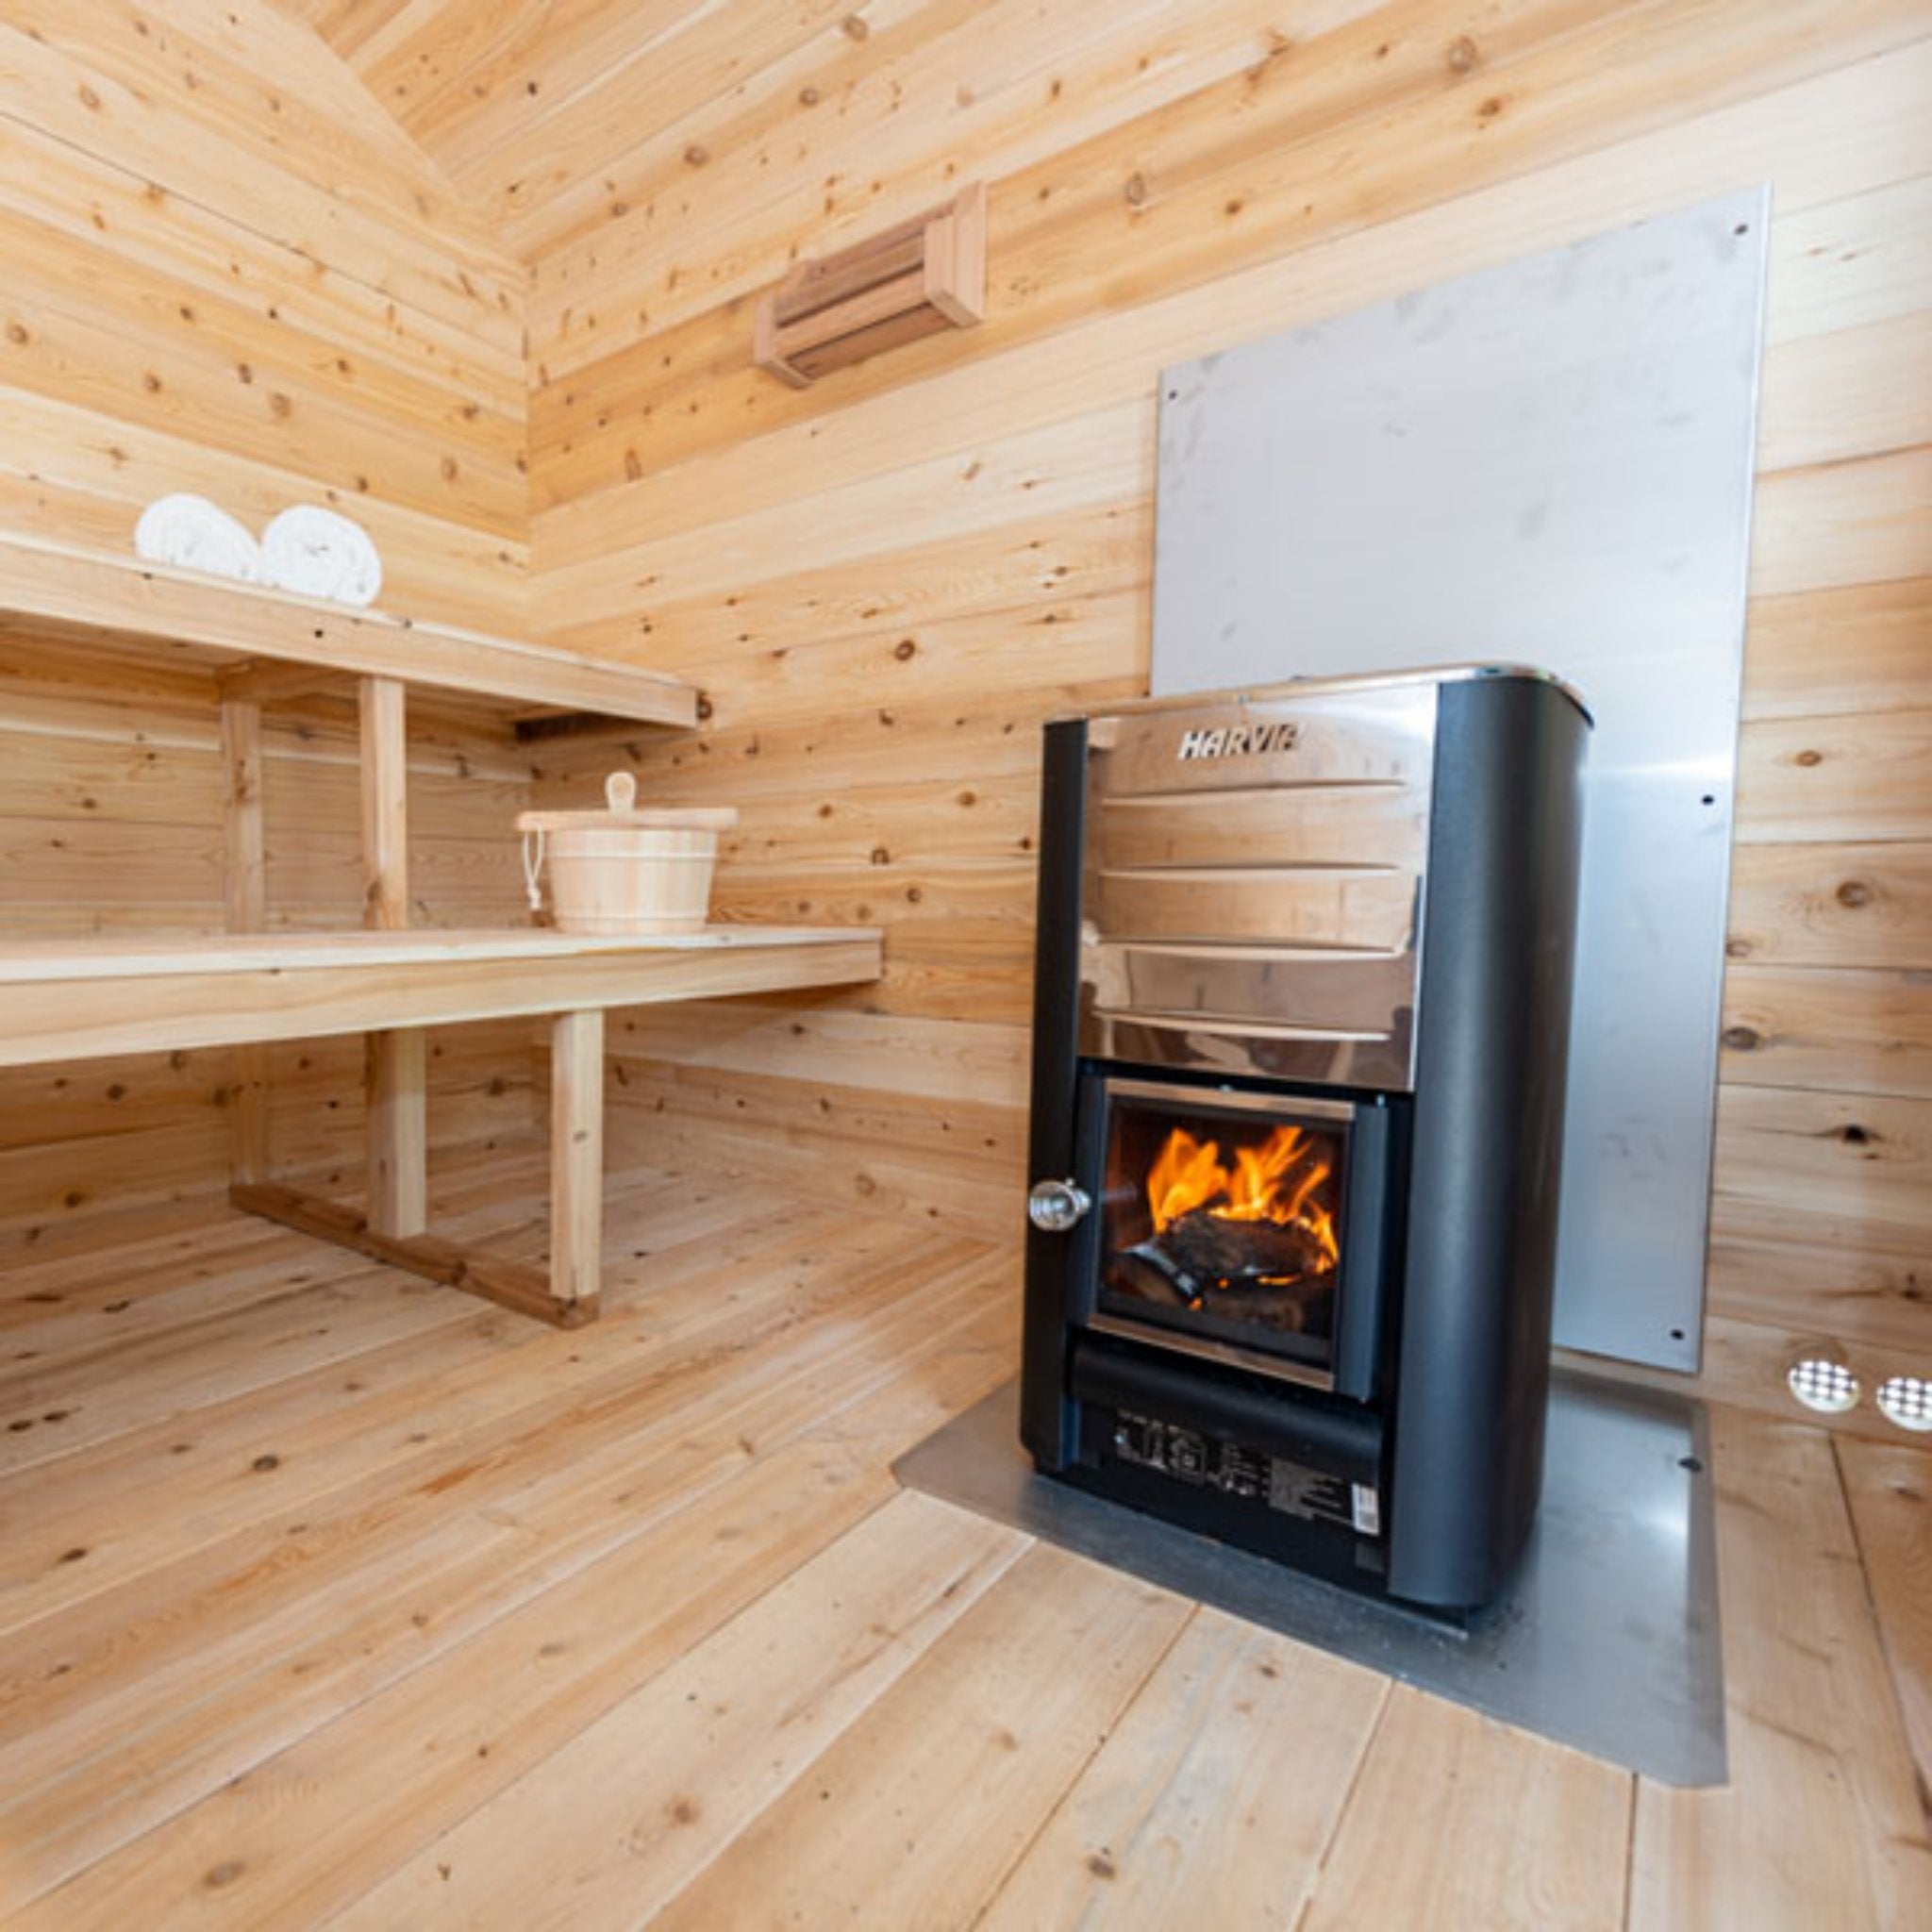 Leisurecraft CT Georgian Cabin Sauna with Porch